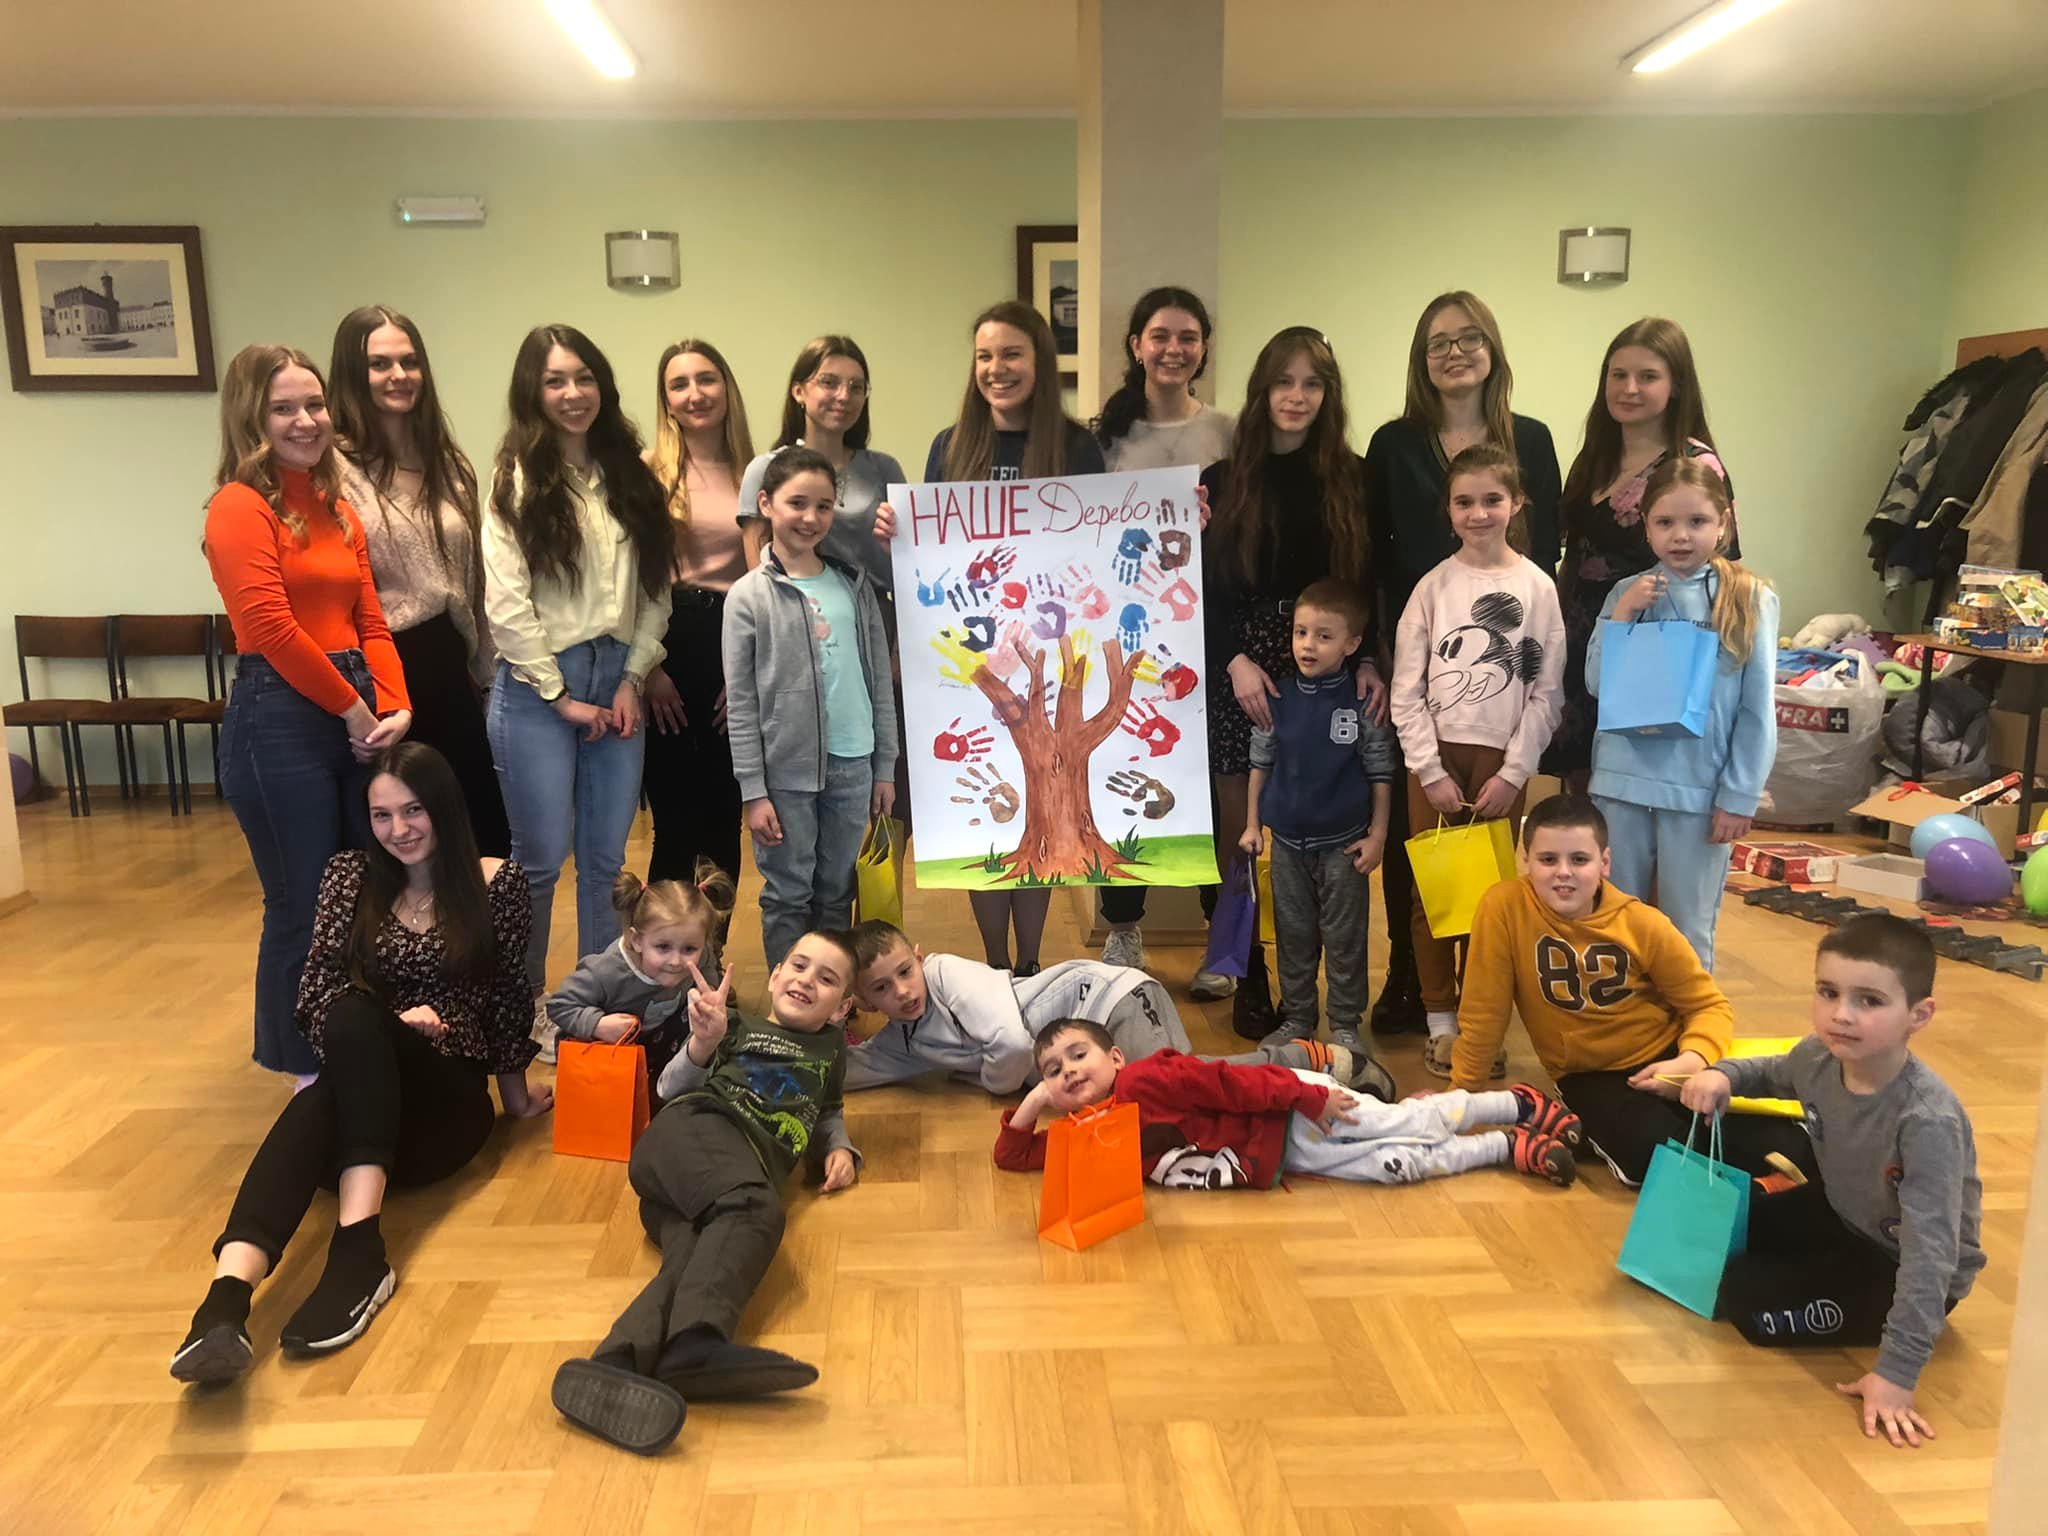 Odwiedziny dzieci z Ukrainy w Domu Studenta